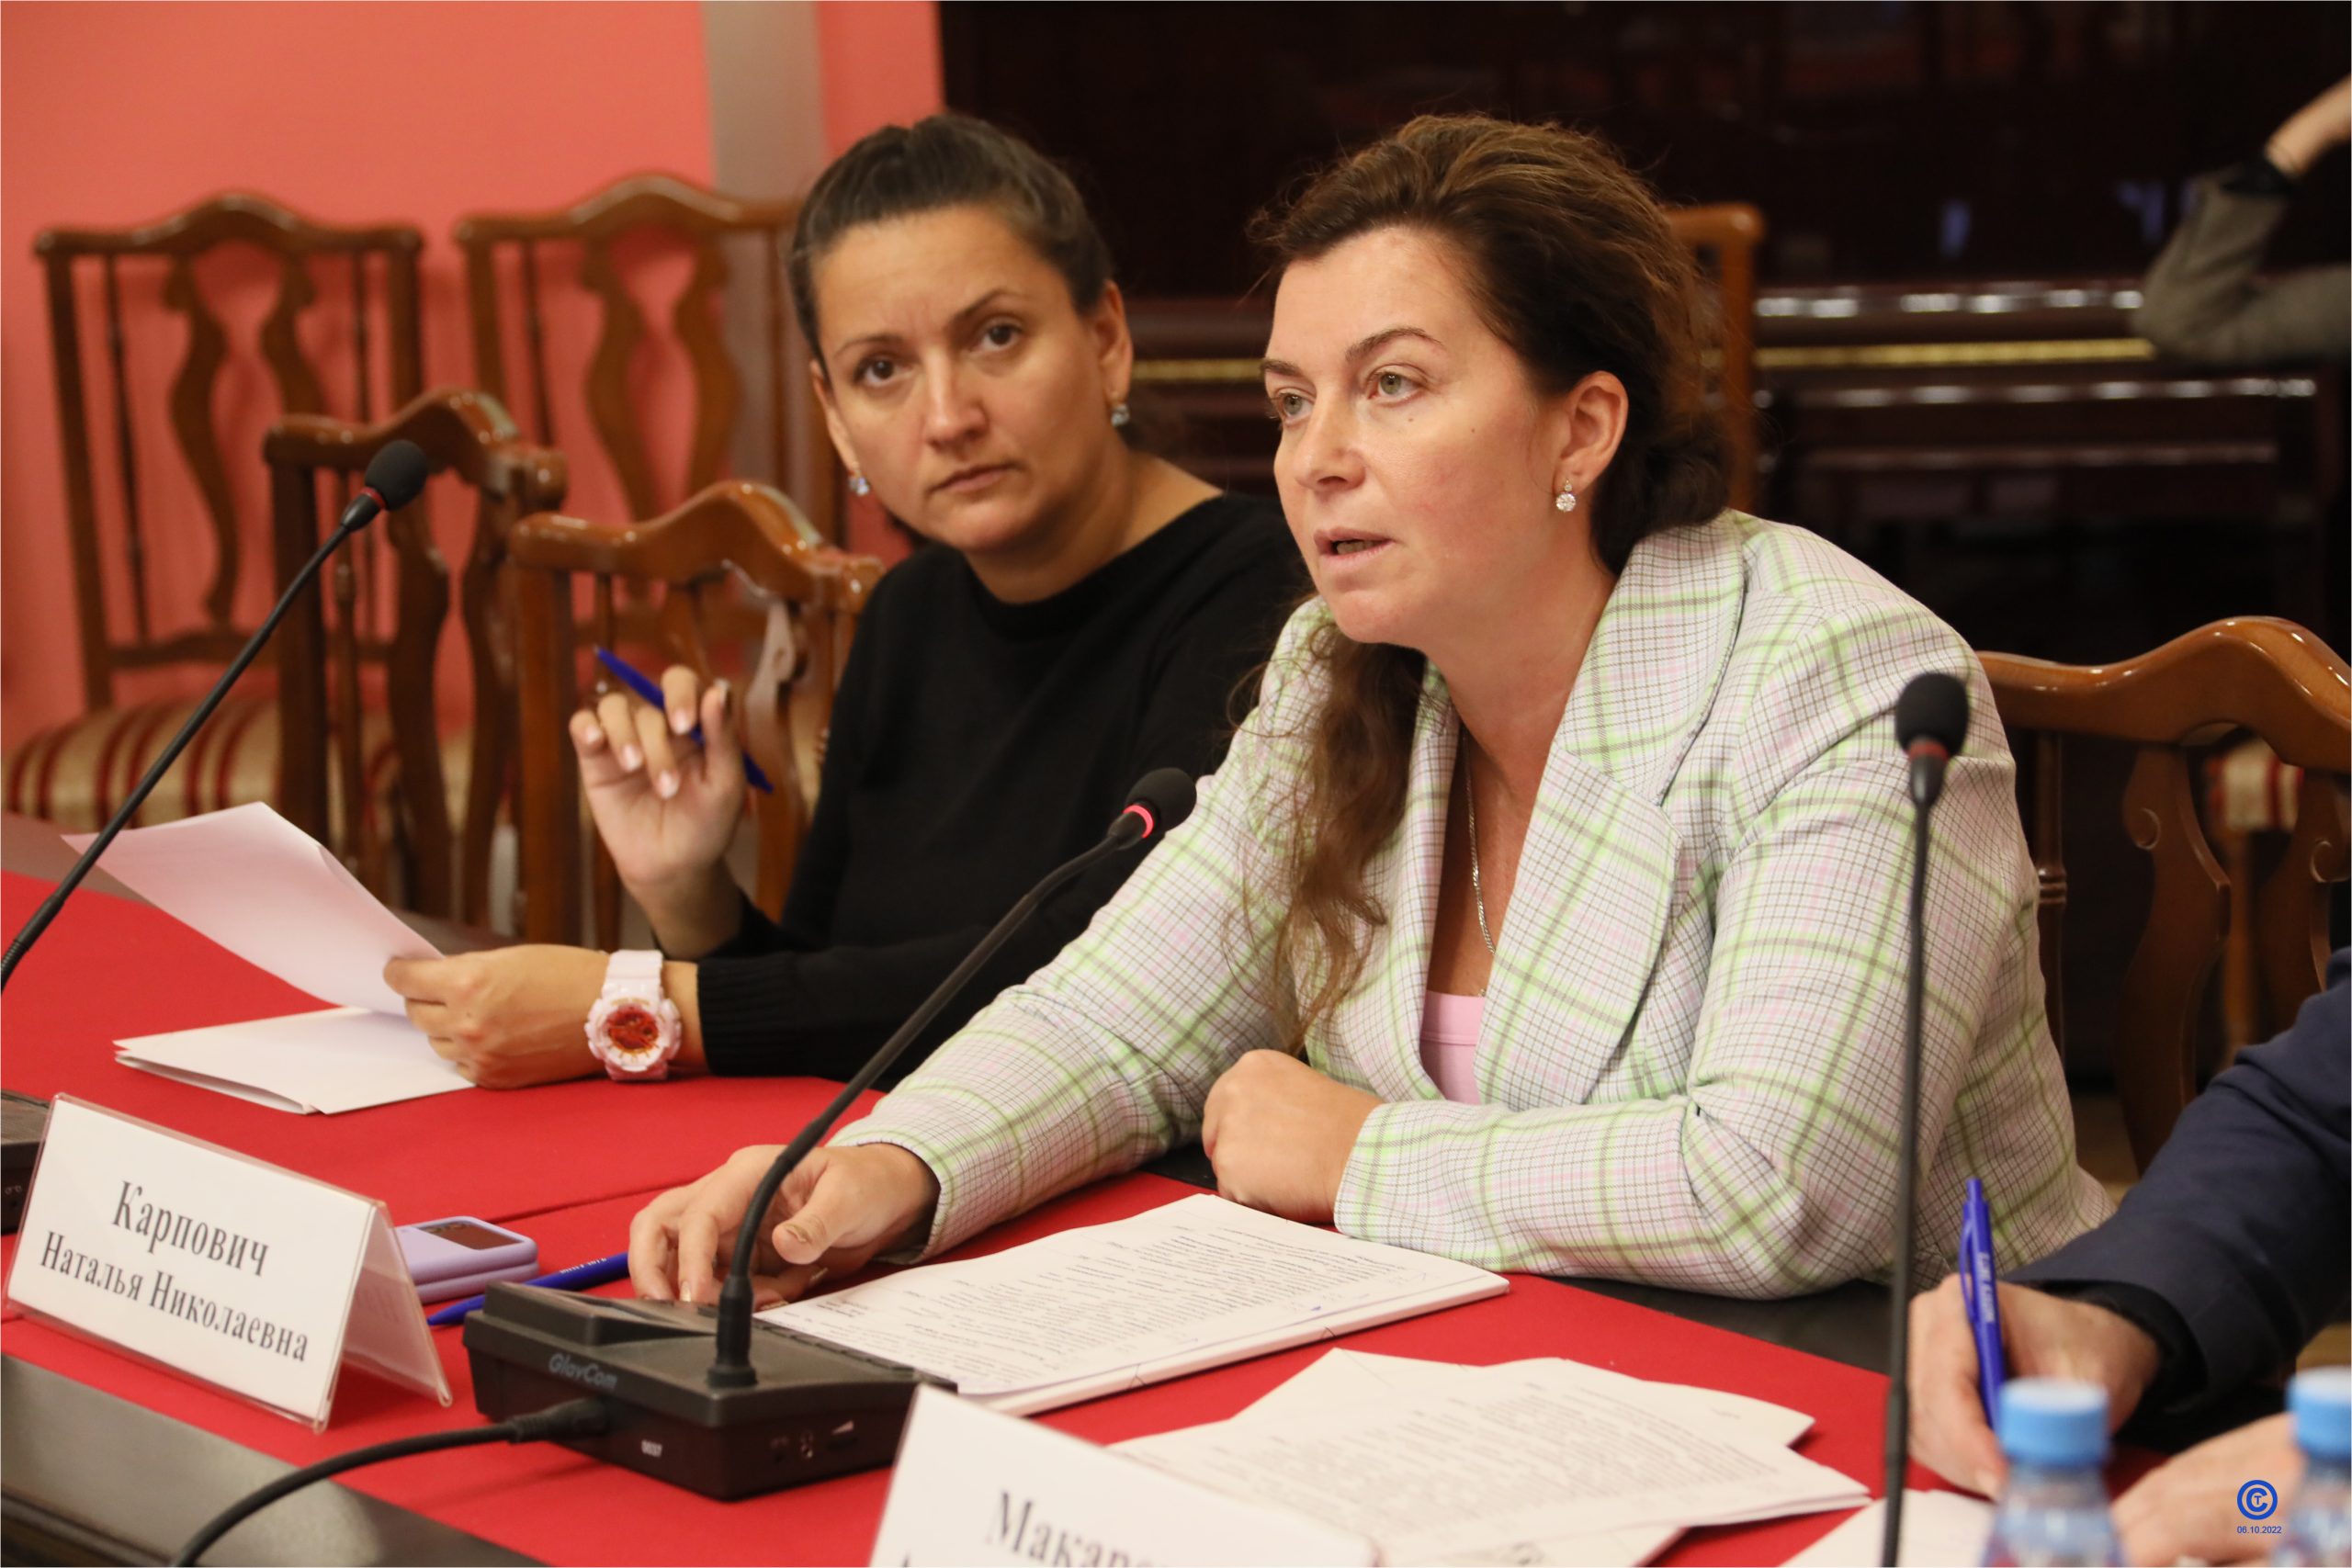 «Разговоры о важном» обсудили на первом заседании общественного родительского комитета АРПО